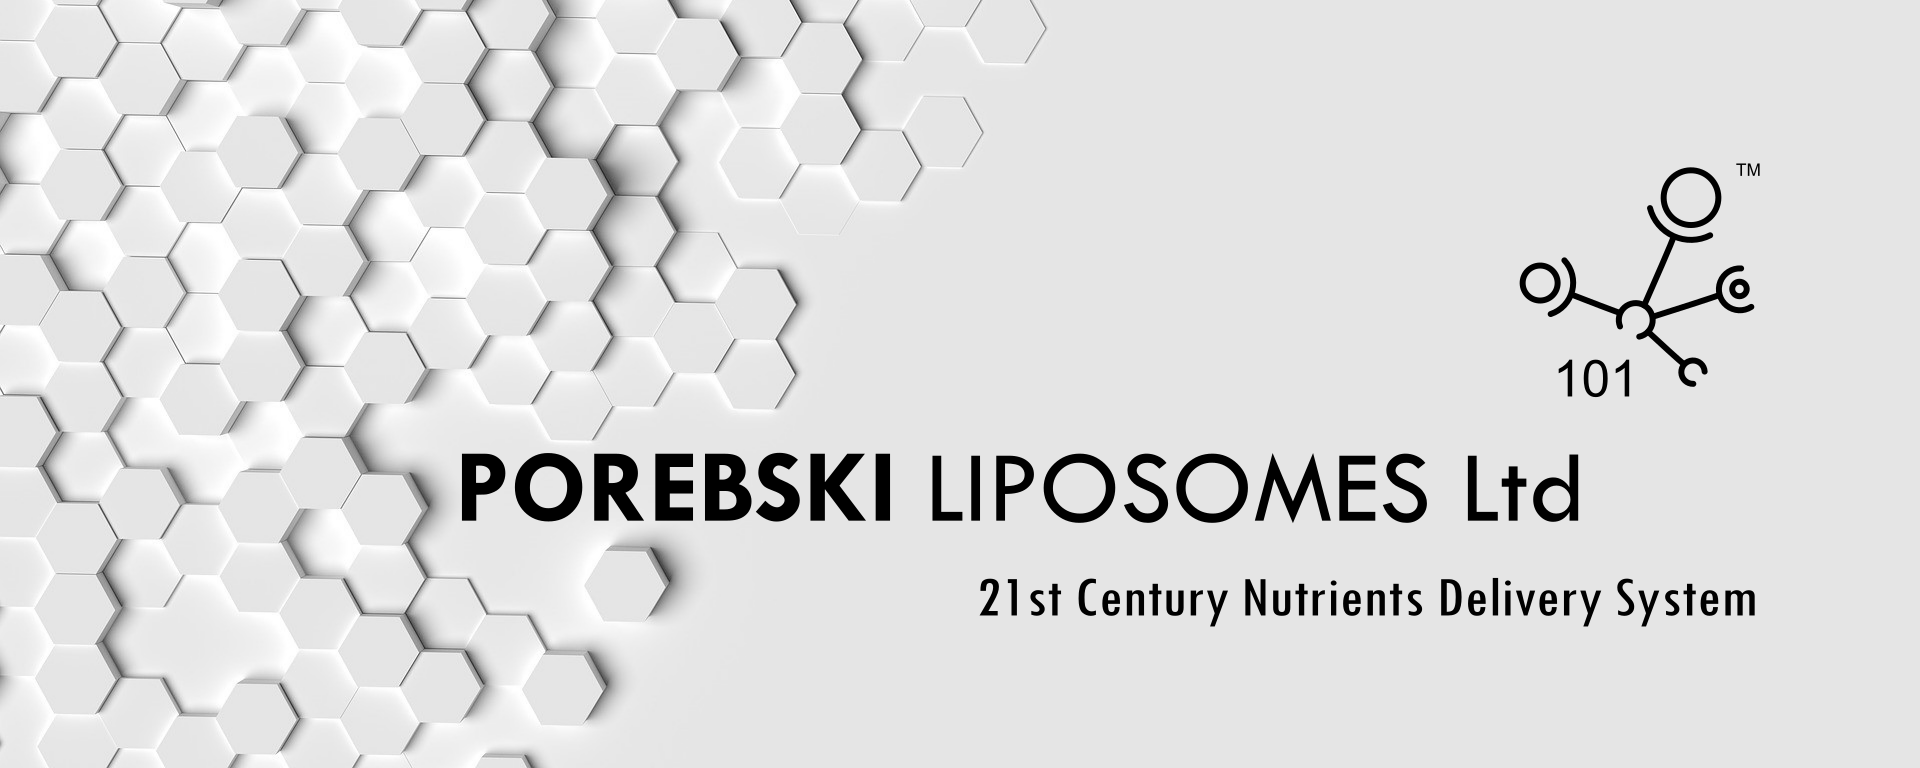 porebski-liposomes-cover-logo.png